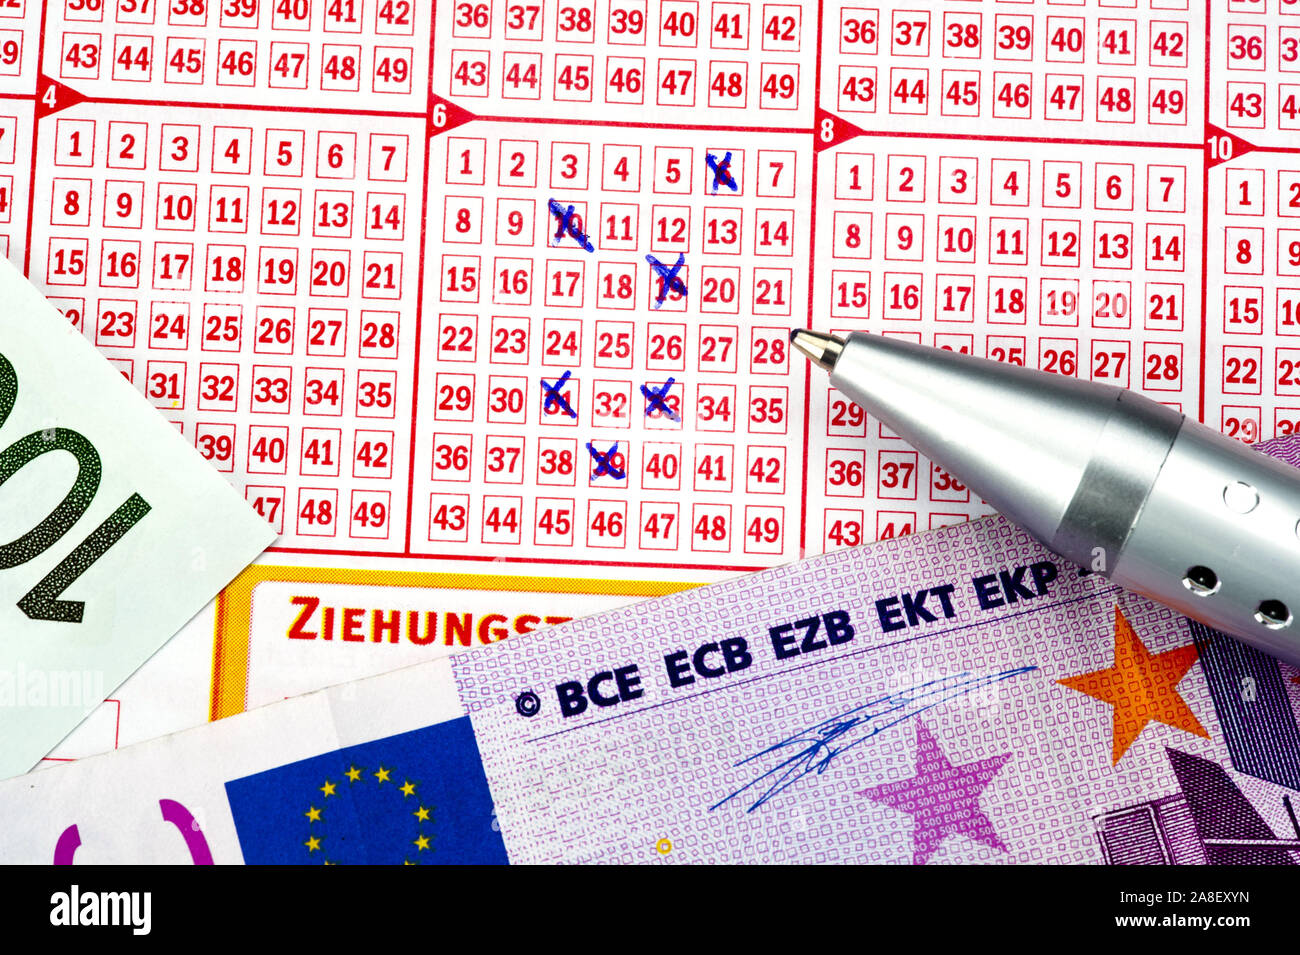 Ausgefüllter Lottoschein, 6 aus 49, Banknoten, Kugelschreiber,Glückspiel, Glücksspiel, Lotterie, Gewinn, Banknote, Euro, Stock Photo